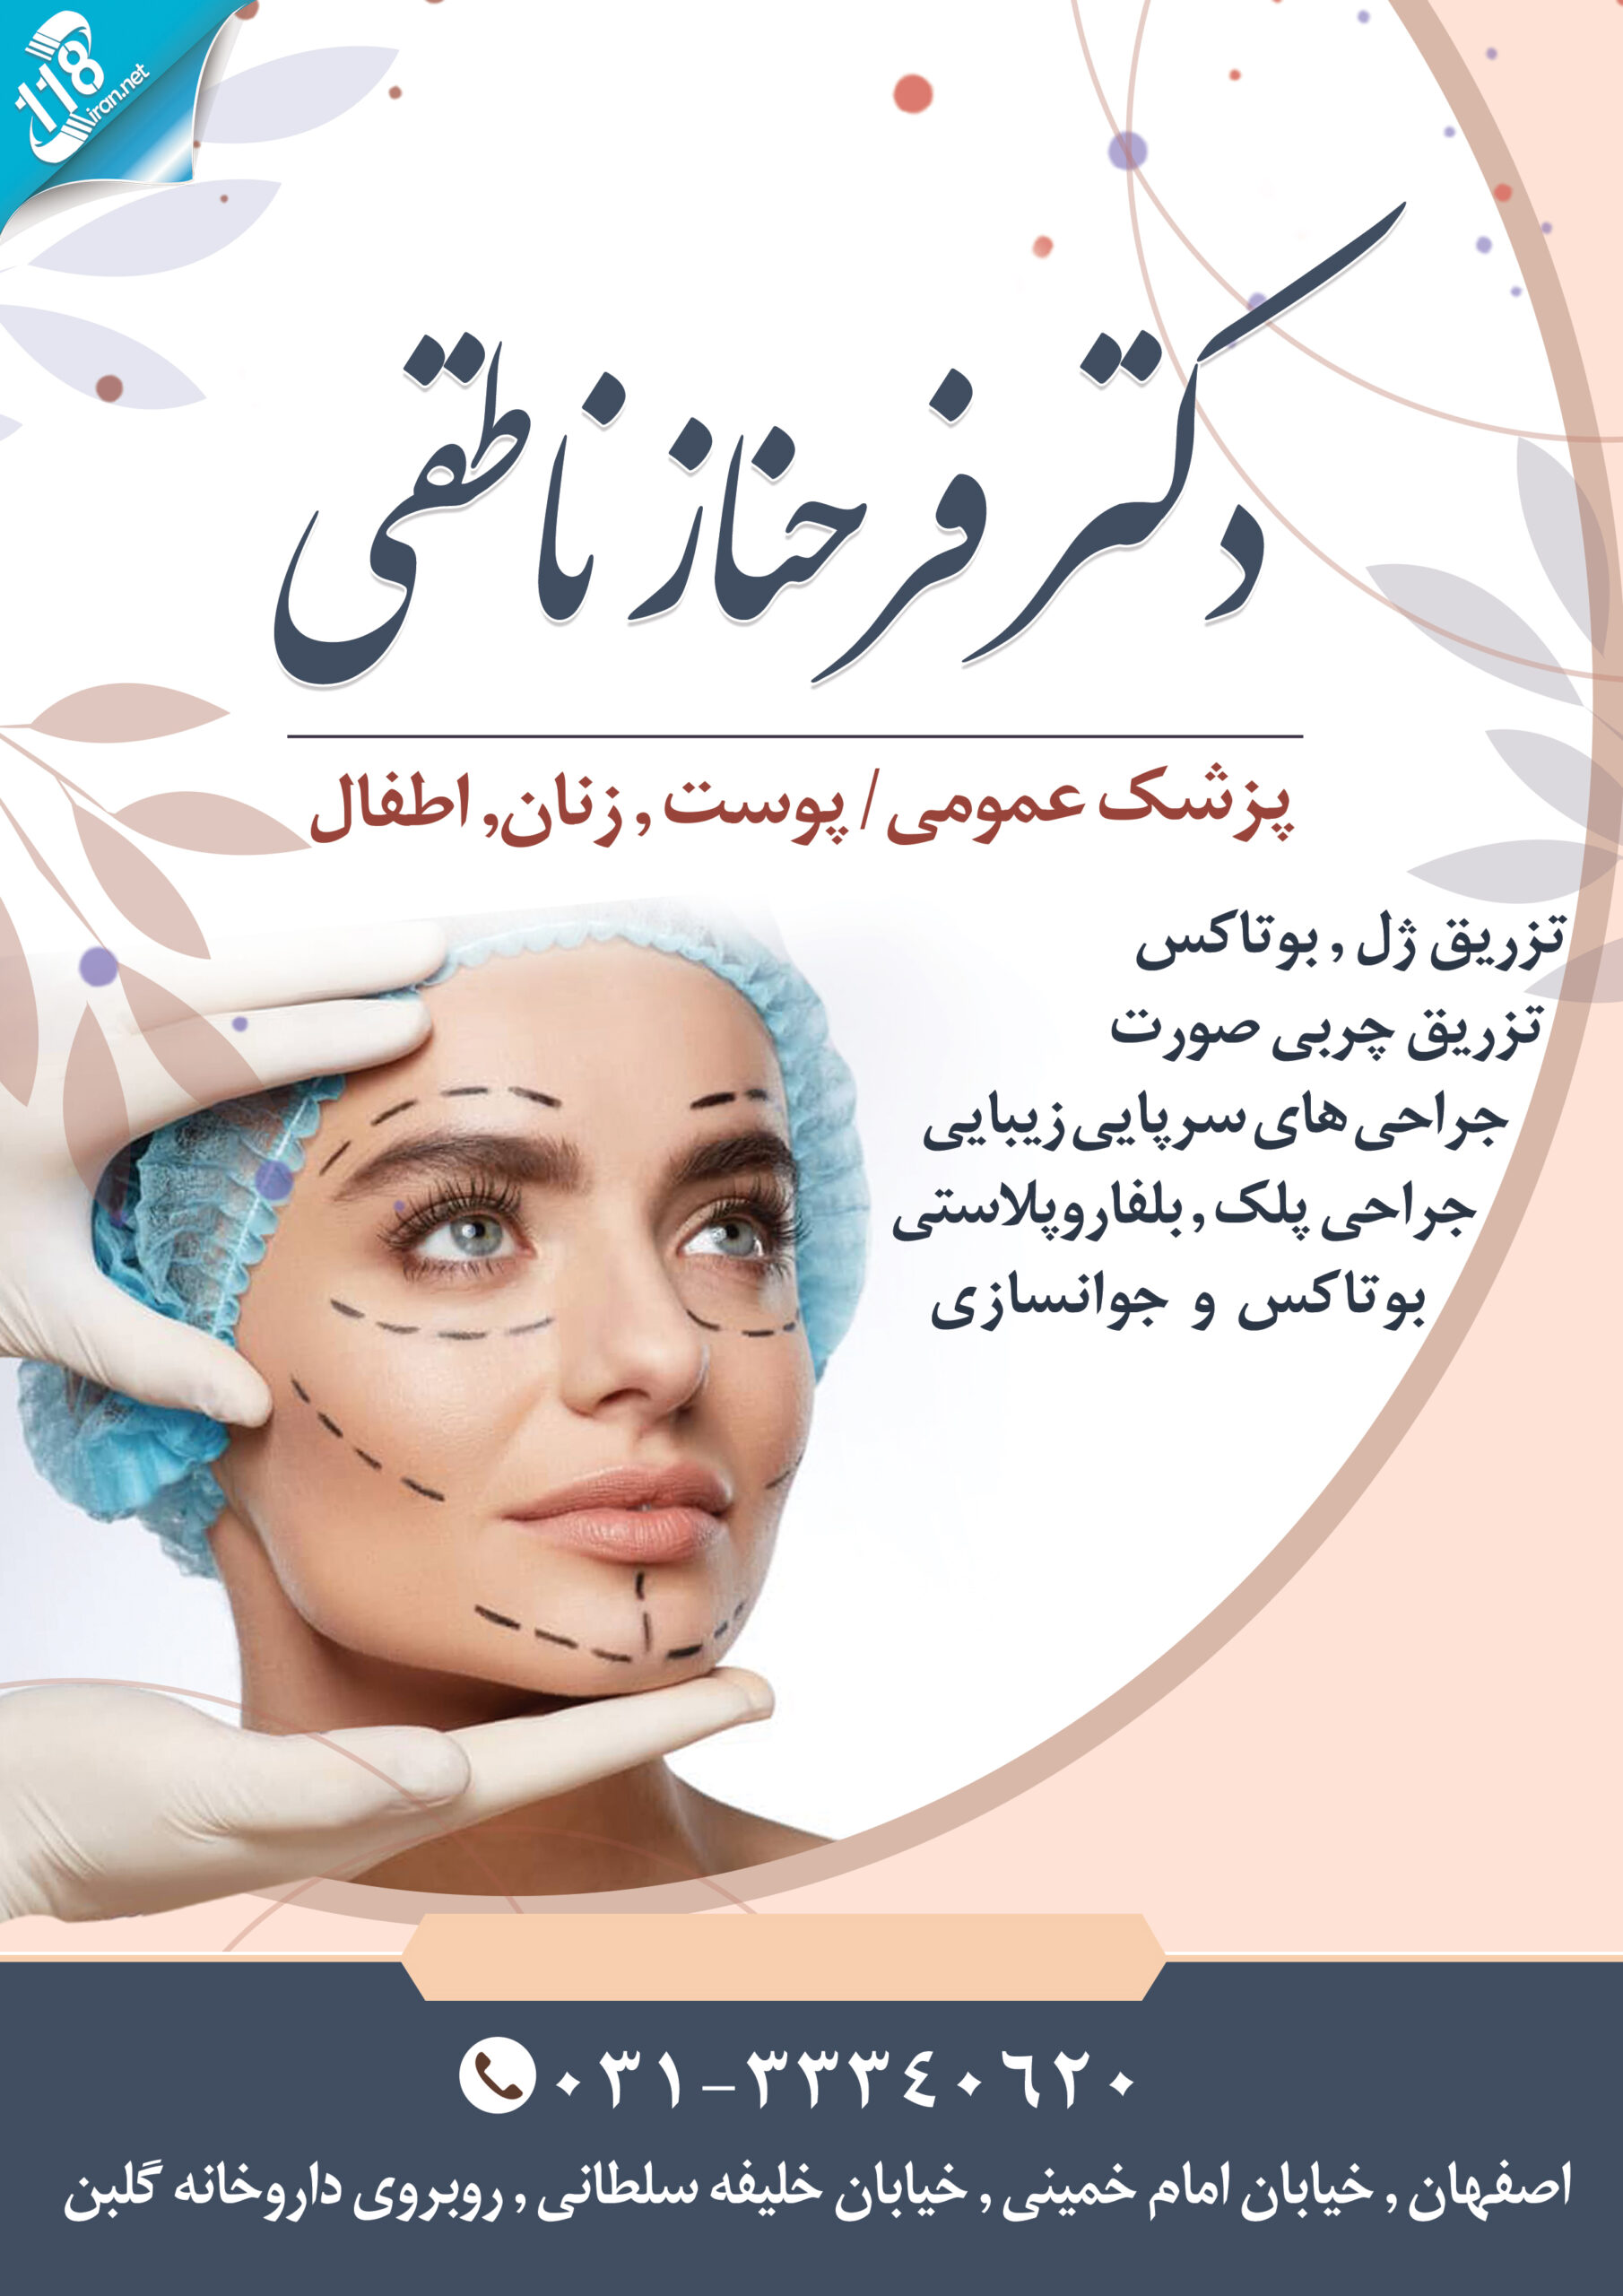 دکتر فرحناز ناطقی در اصفهان